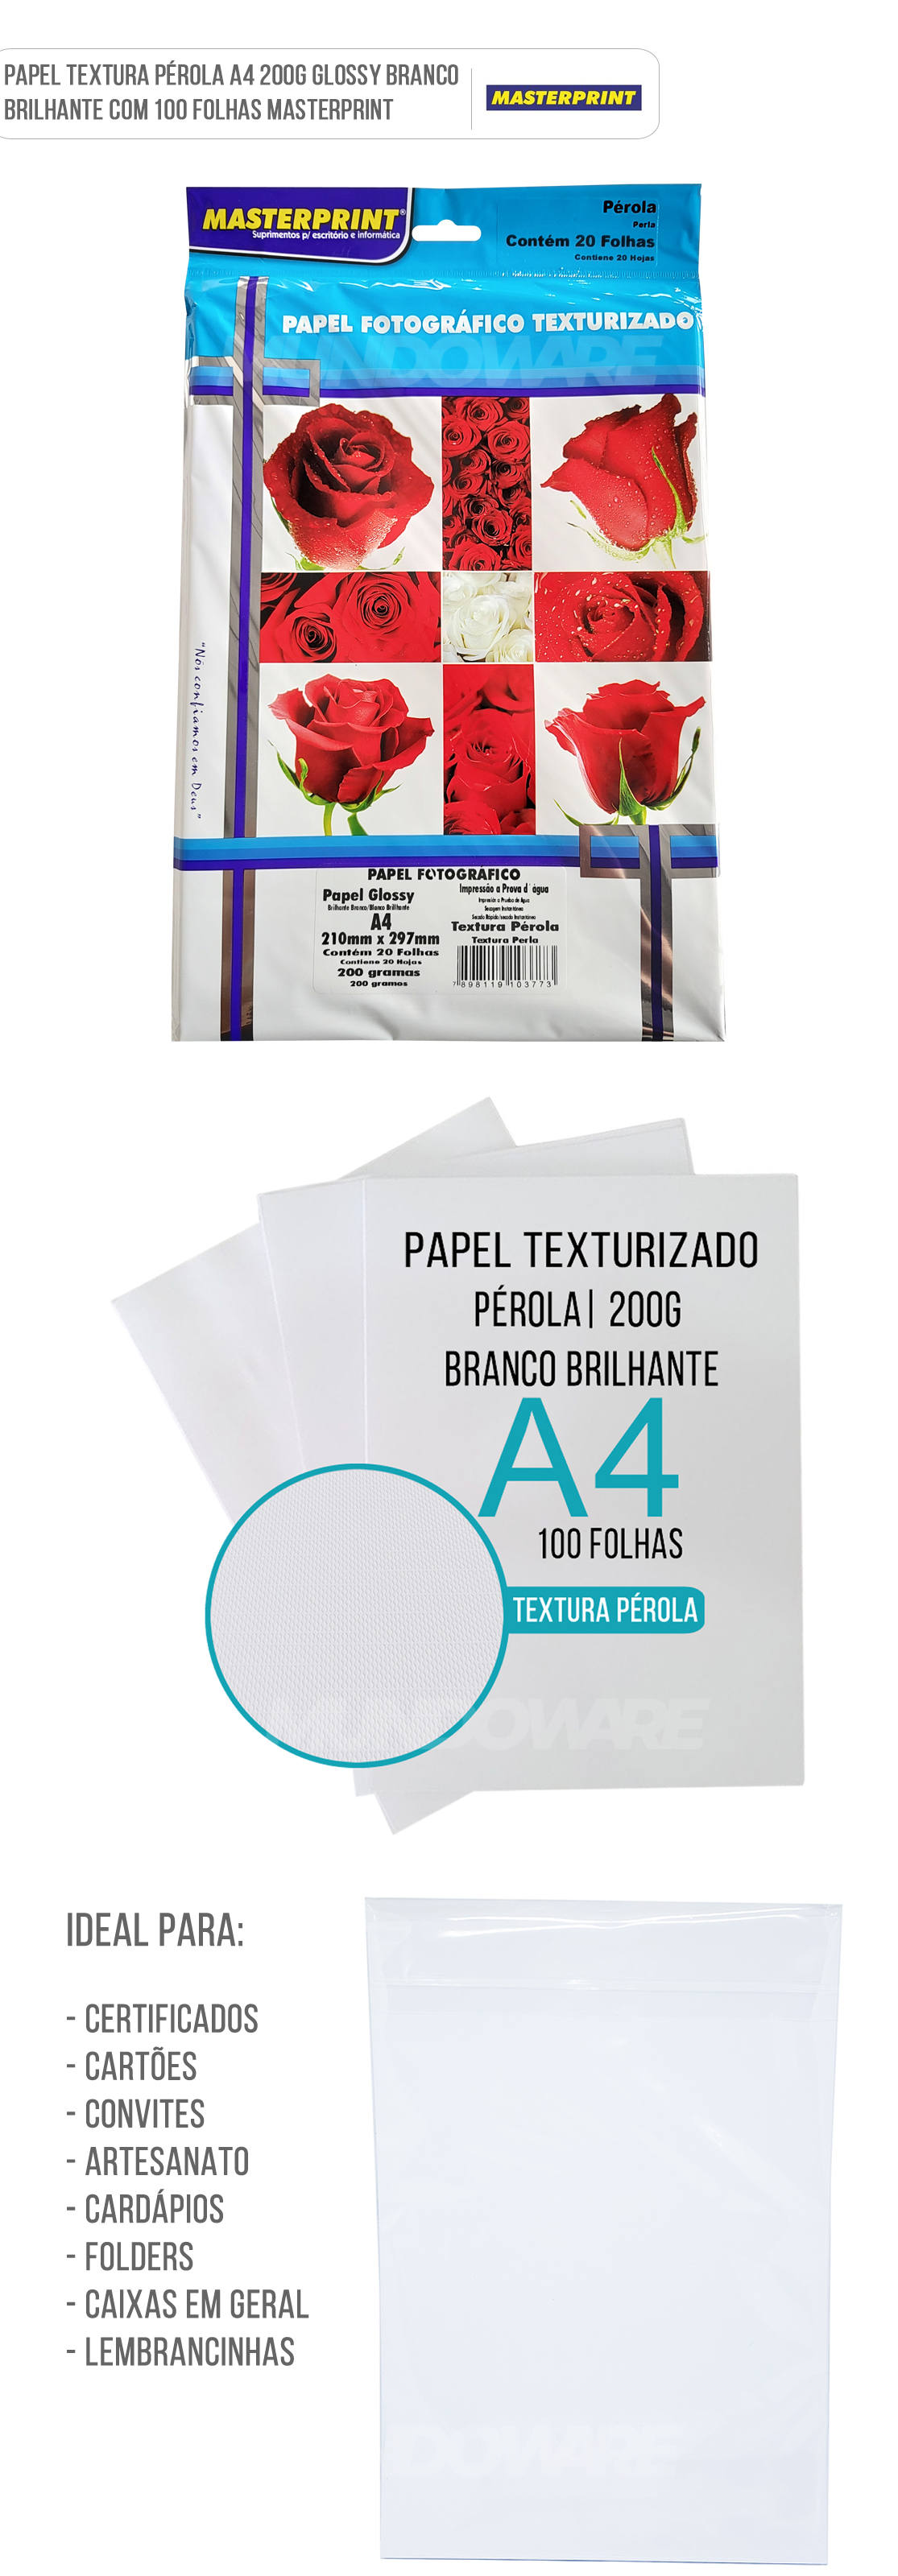 Papel Texturizado Prola 200g A4 Glossy Branco Brilhante com 100 folhas